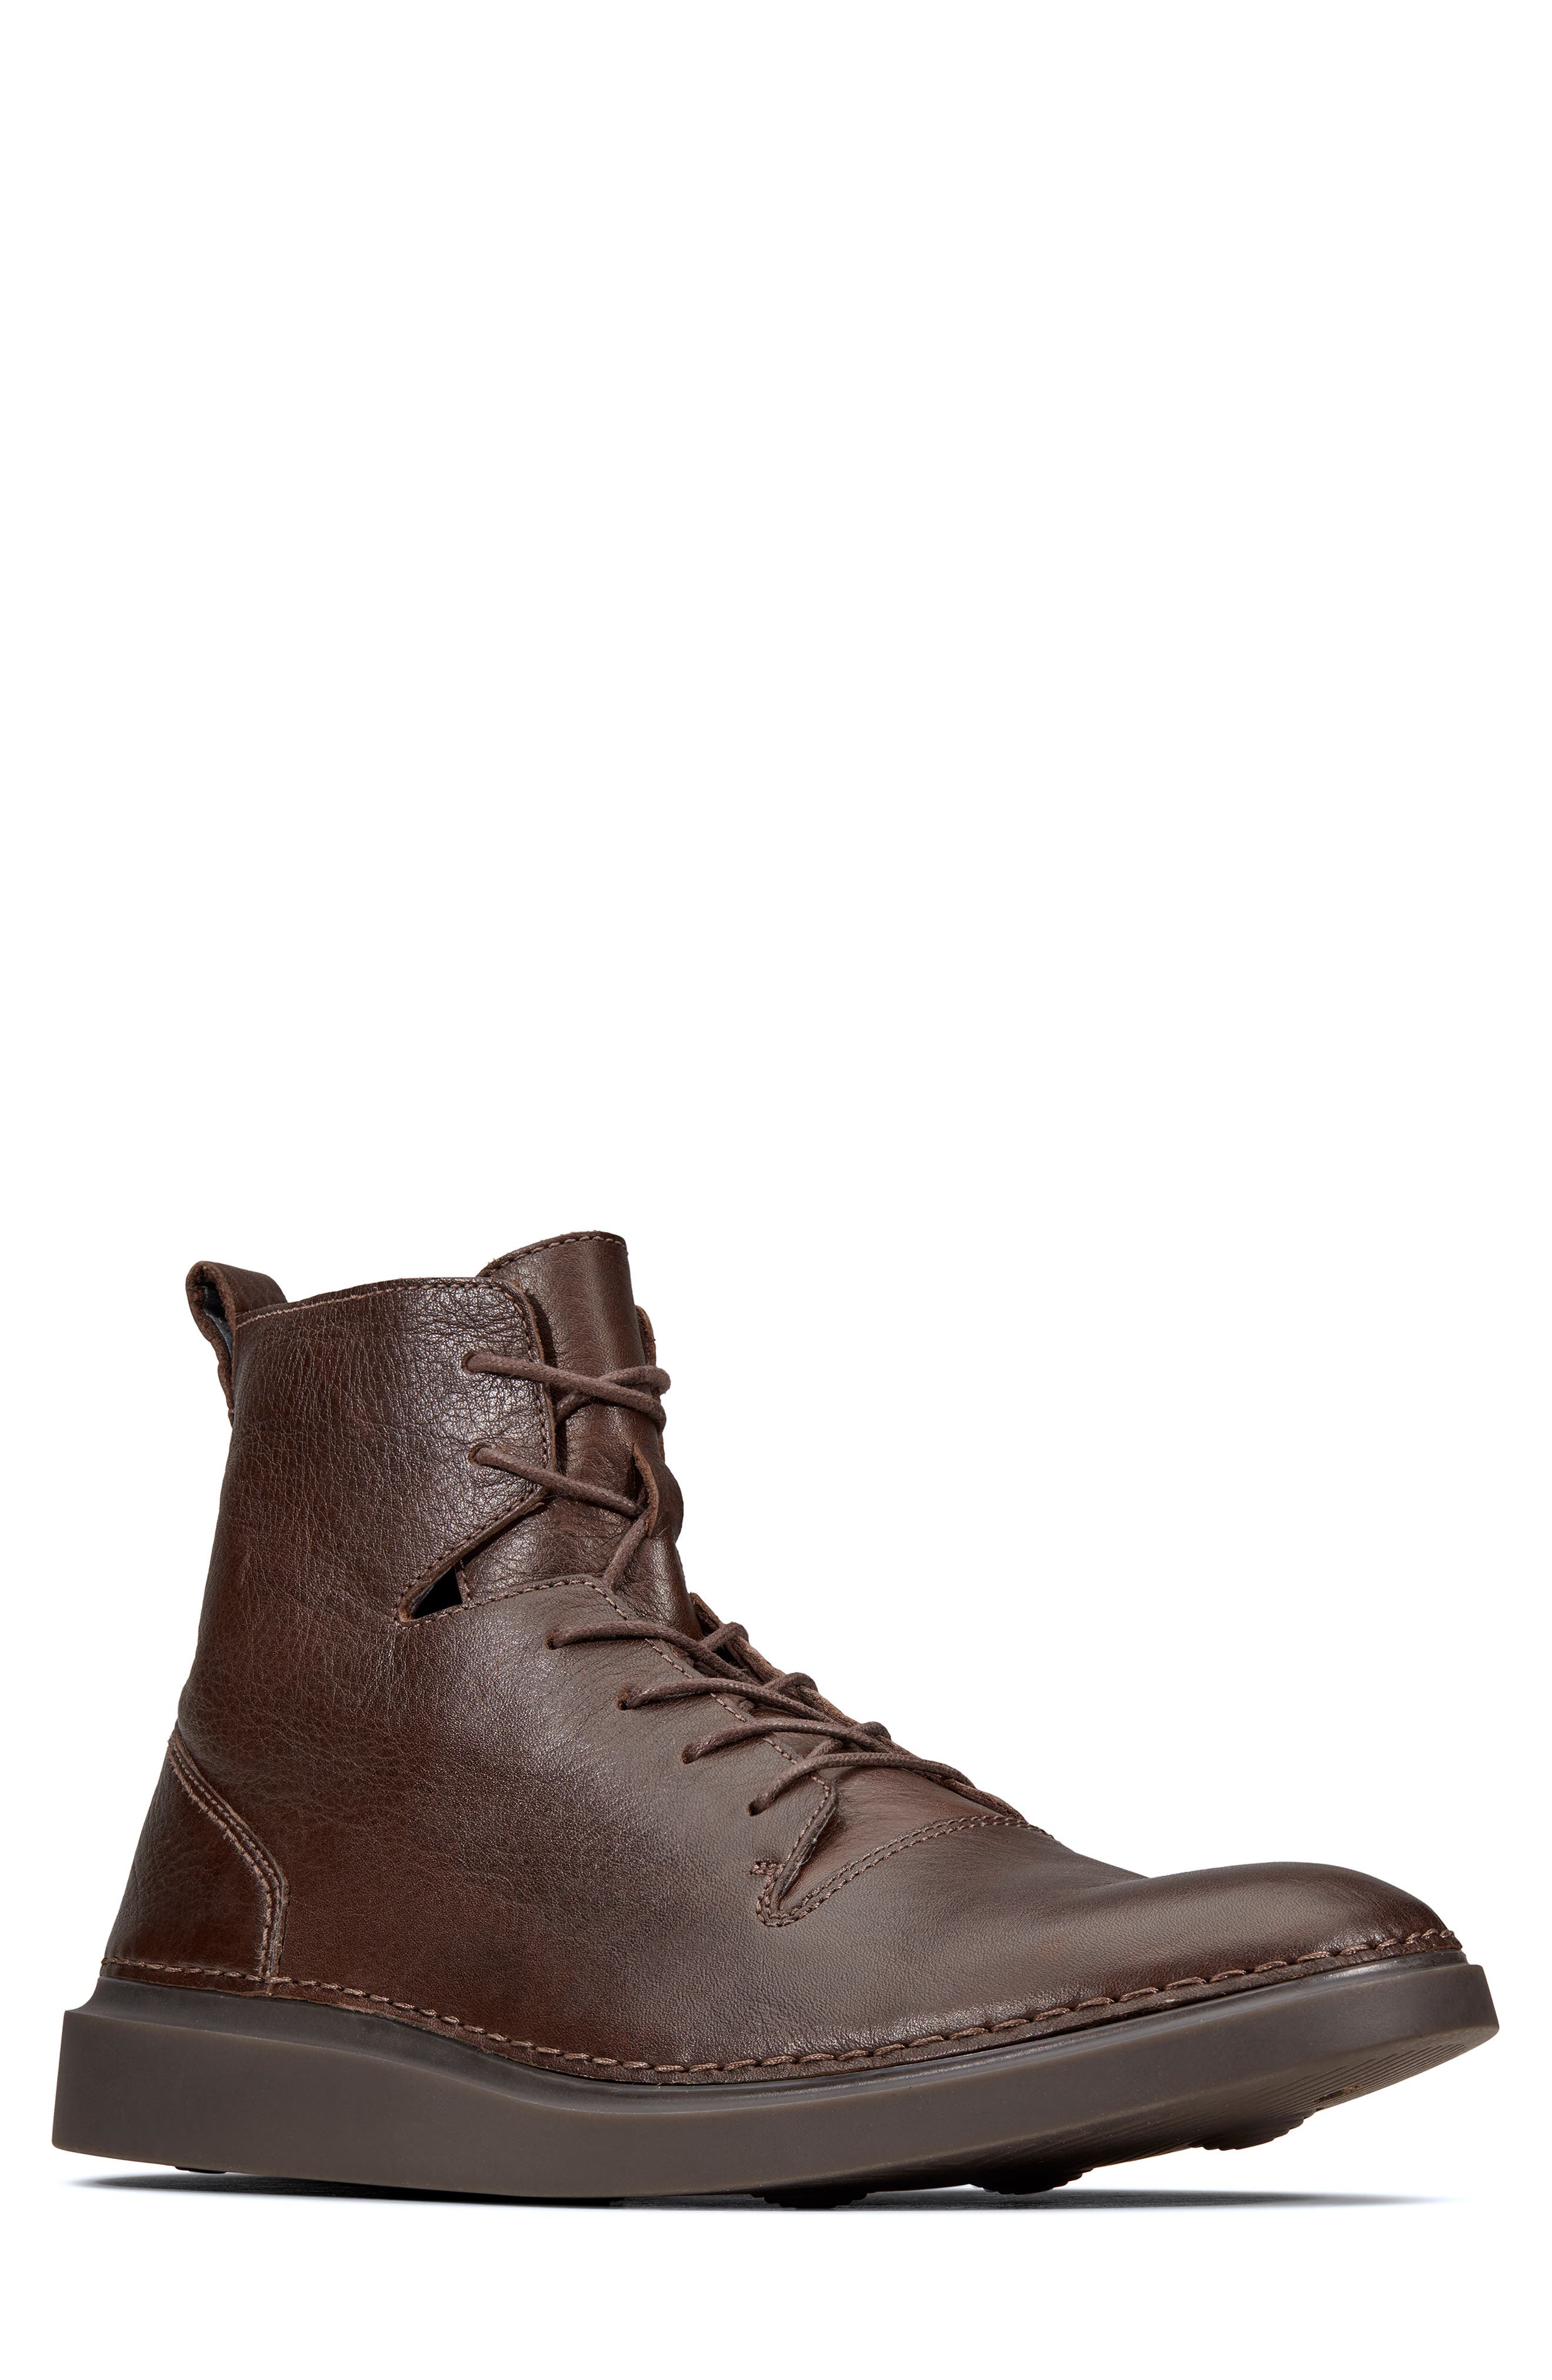 hale rise boots